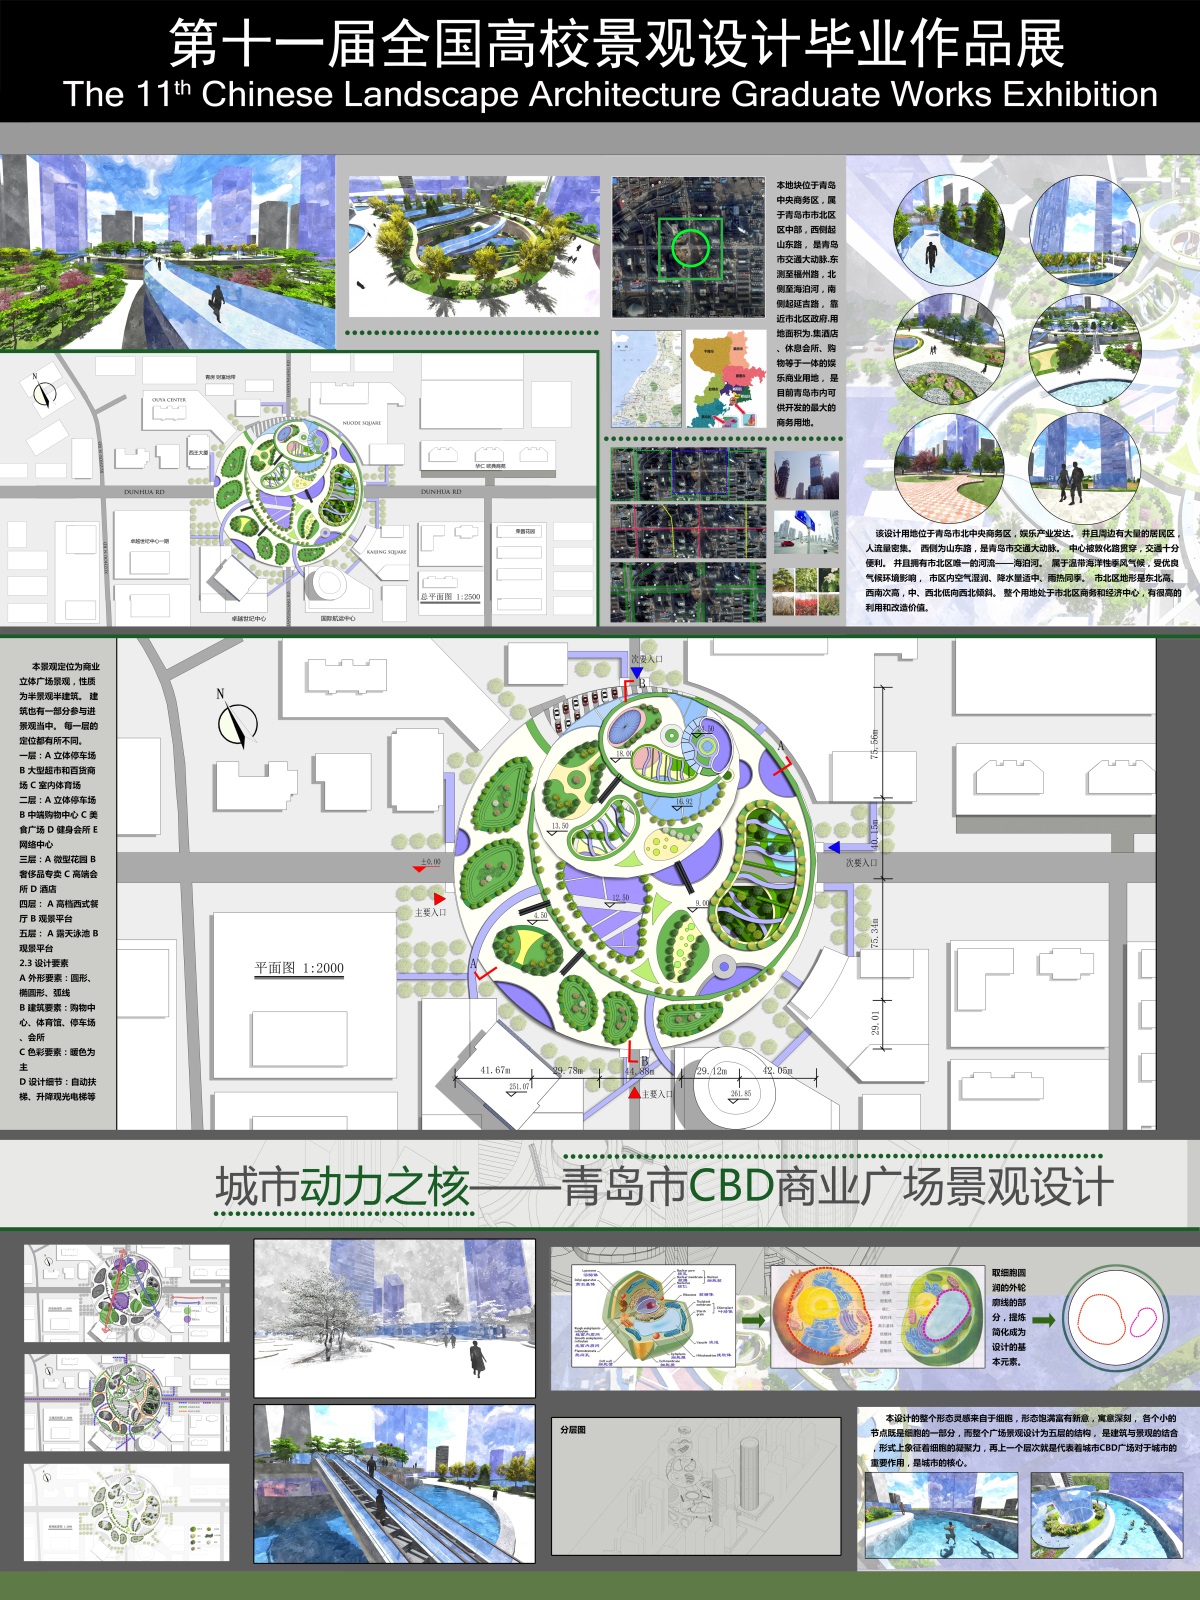 城市动力之核——青岛市CBD商业广场景观设计-2